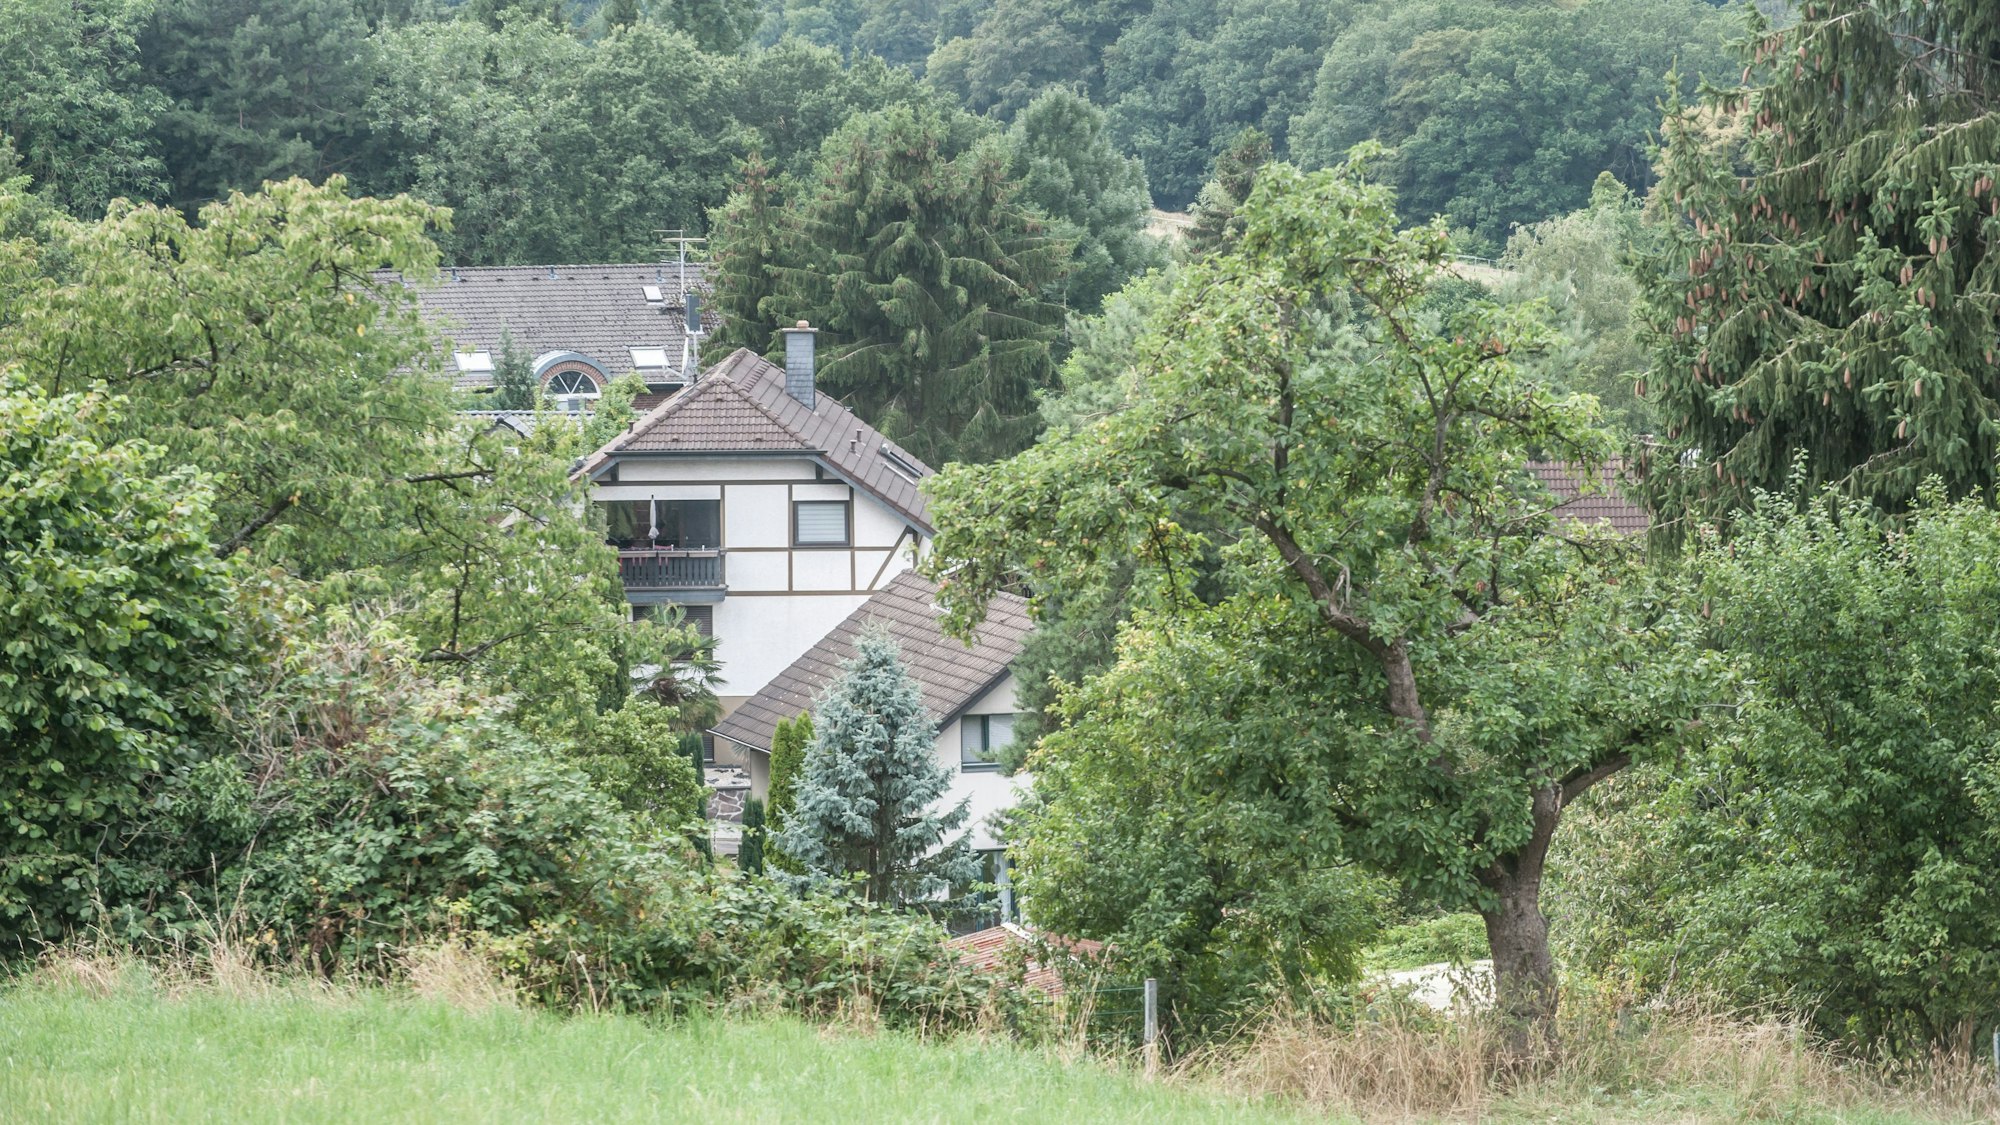 Dächer von Häusern hinter Bäumen im Burscheider Dorf Dürscheid, nahe der A 1.